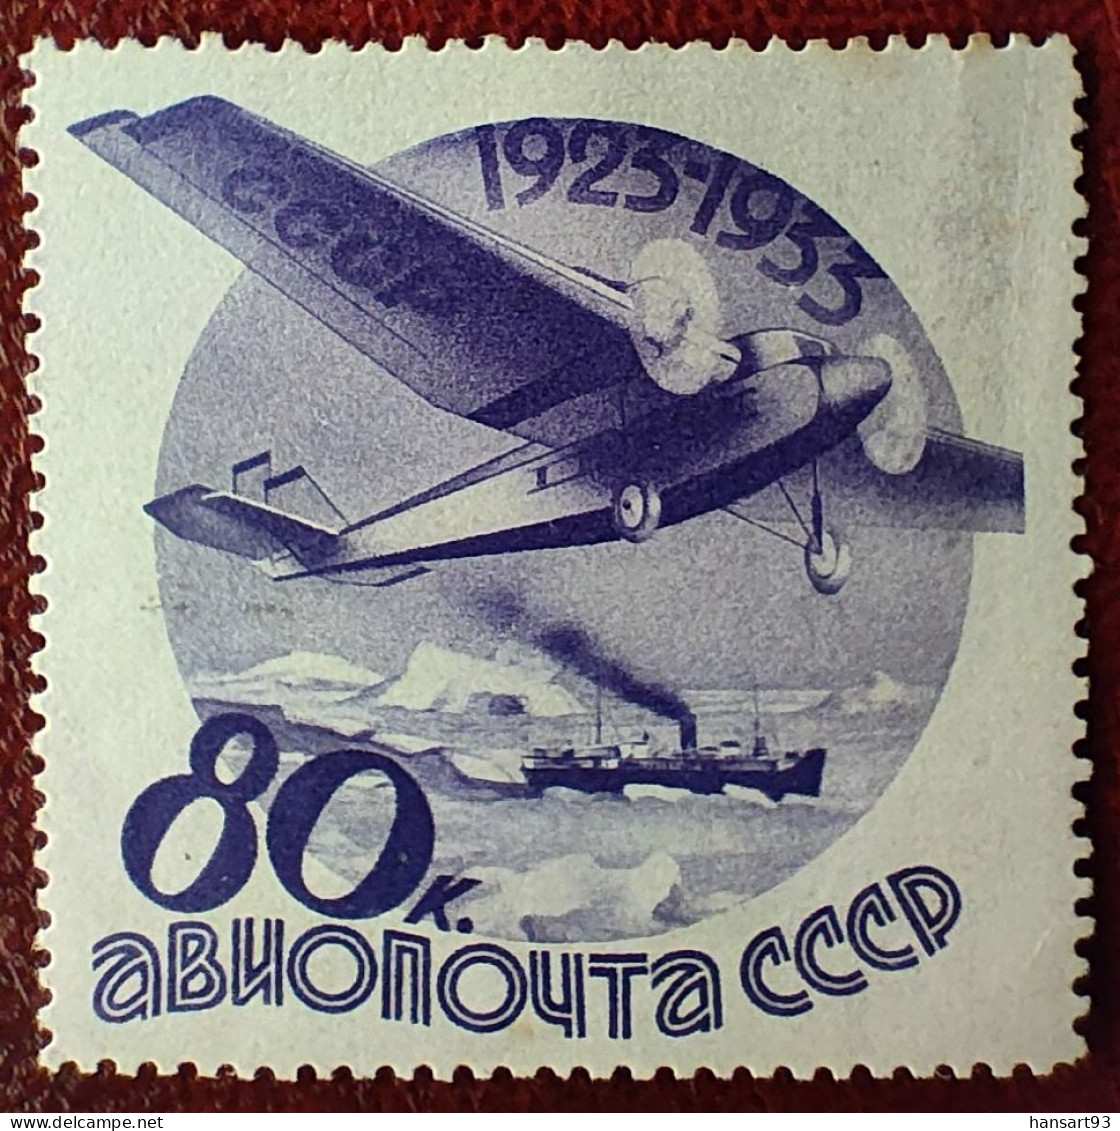 URSS Rare Poste Aérienne N° 45 N* TTB ! Cote 2020 : 50,00 Euros ! A Voir Absolument !! - Nuevos